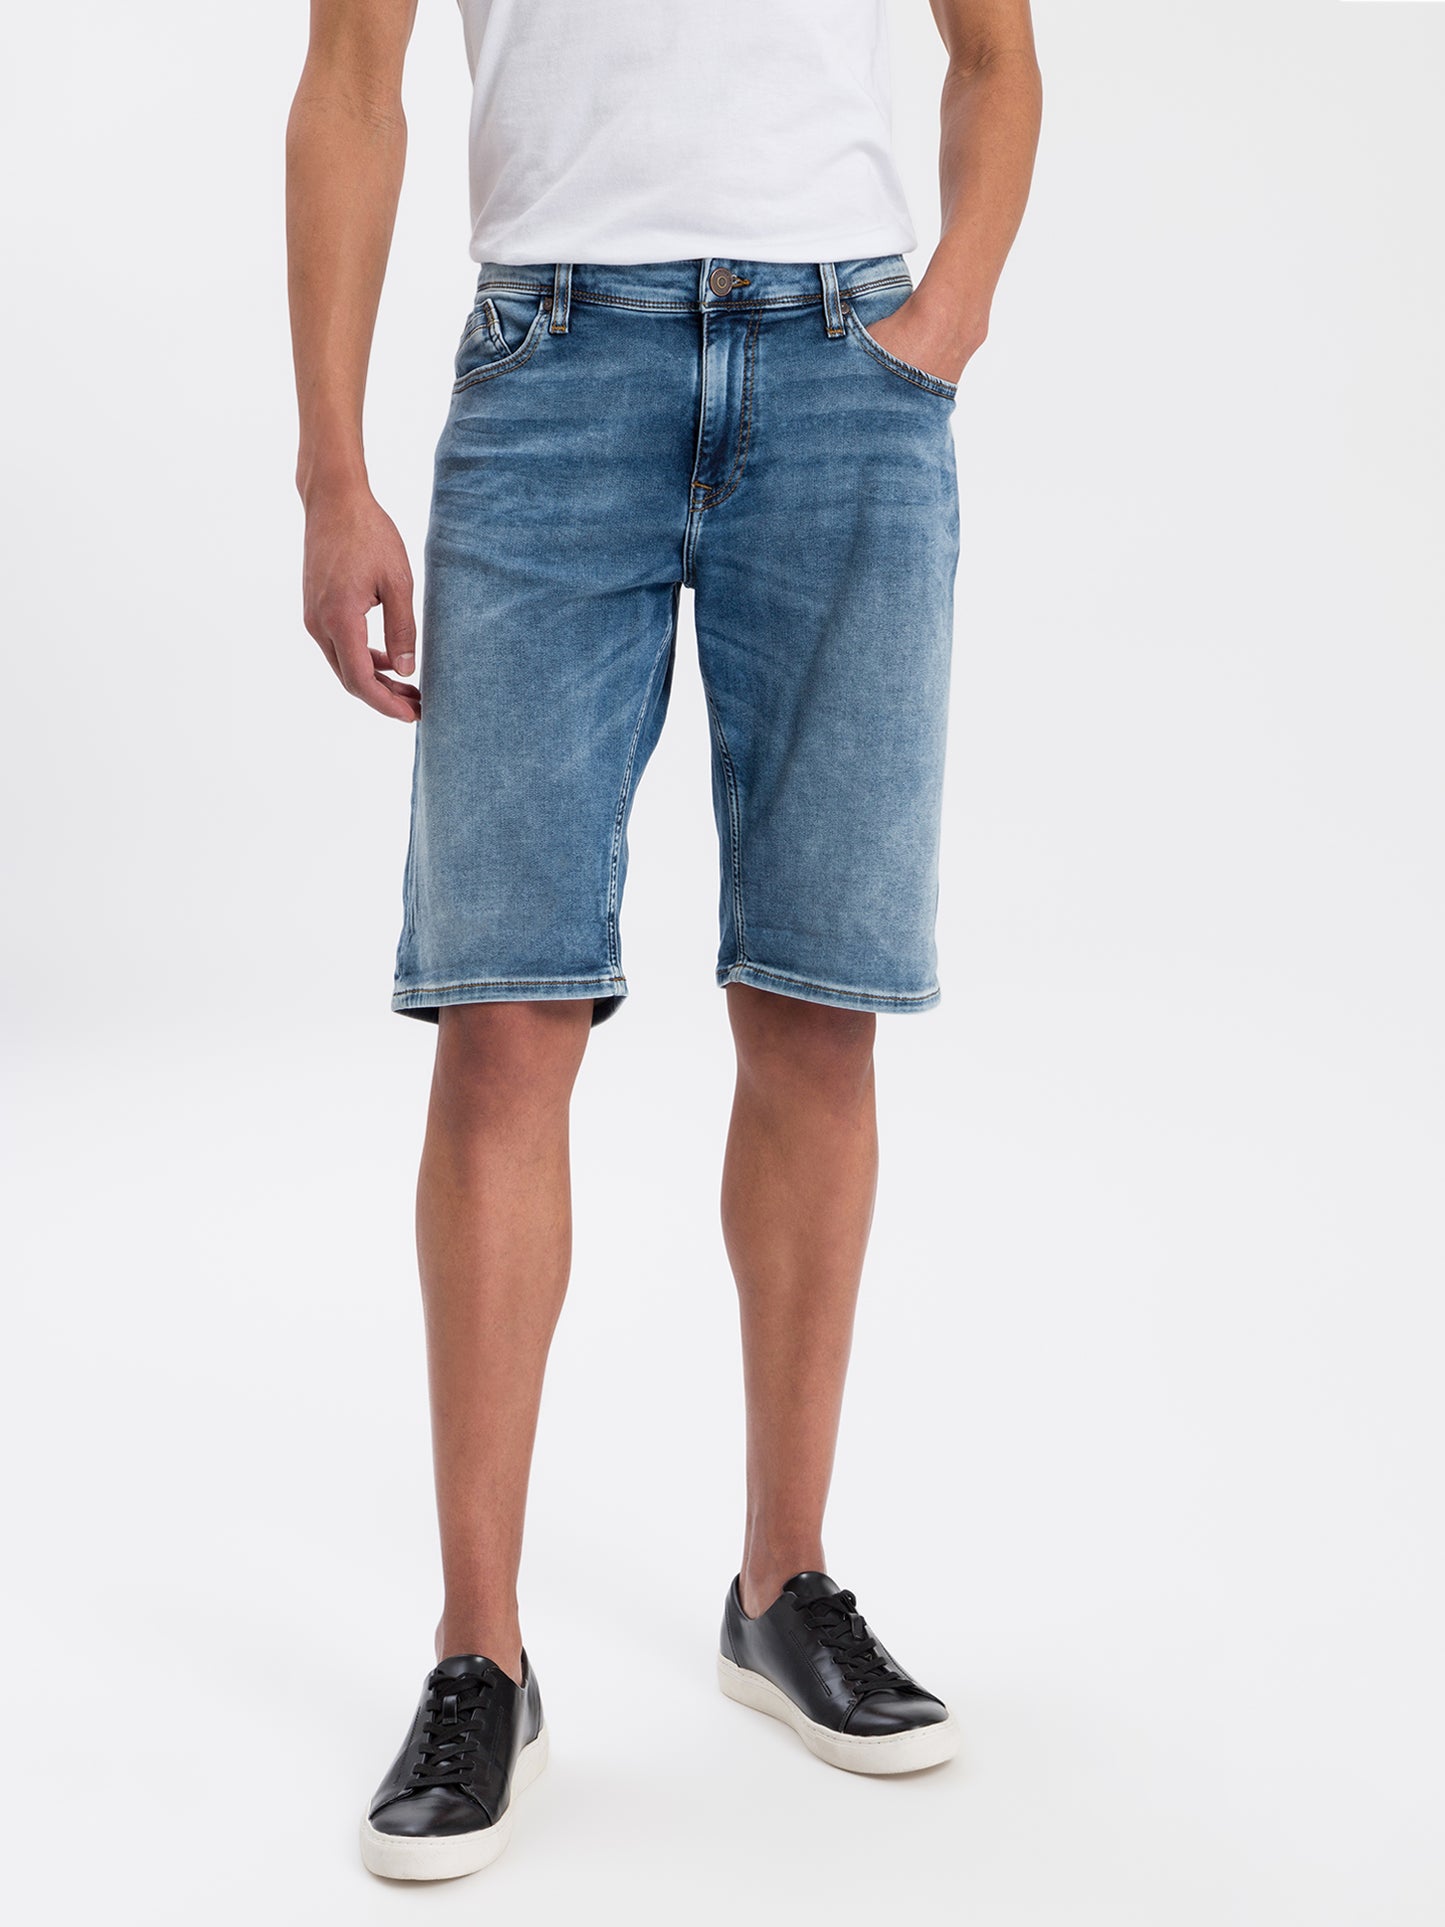 Leom Herren Jeans Shorts Regular hellblau